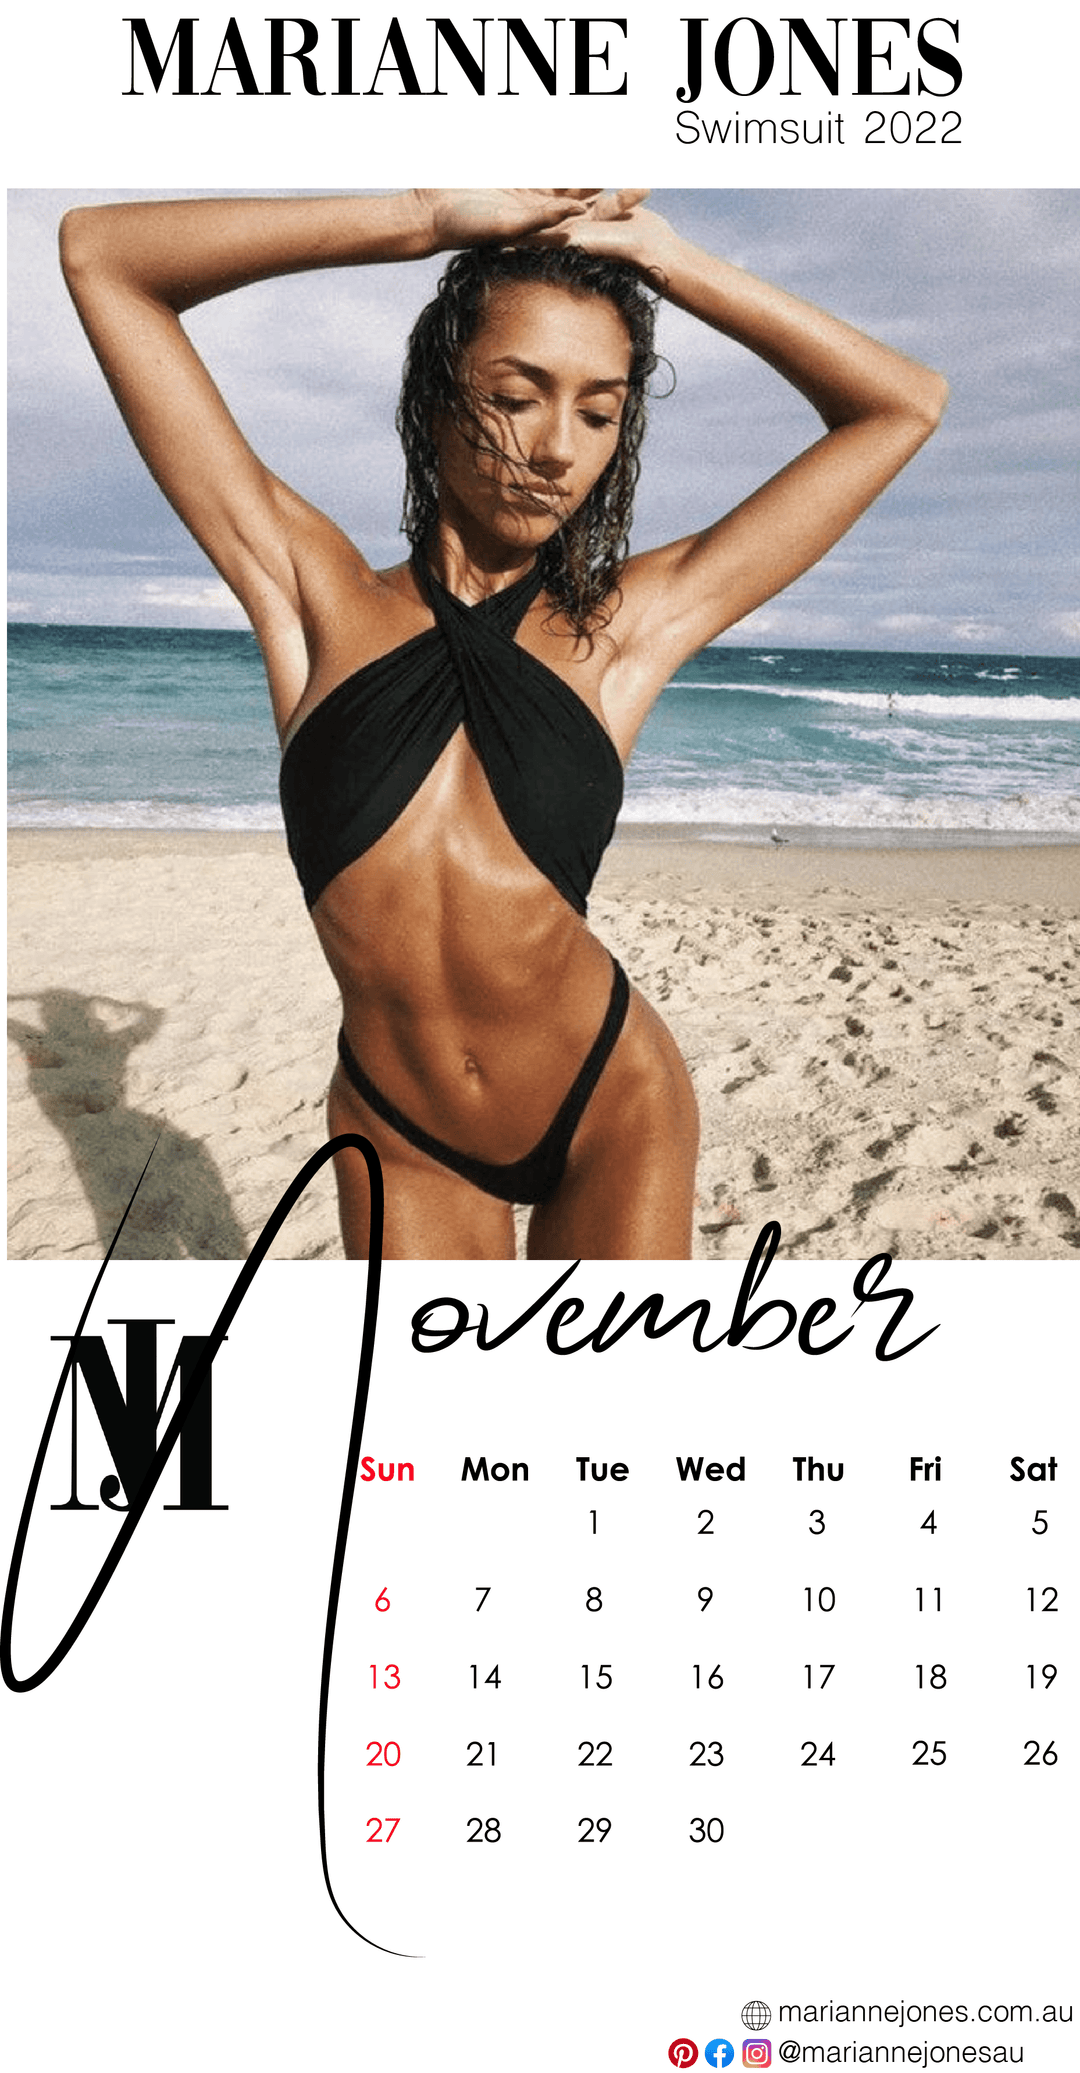 Criss Cross Swimsuit November 2022 - Marianne Jones